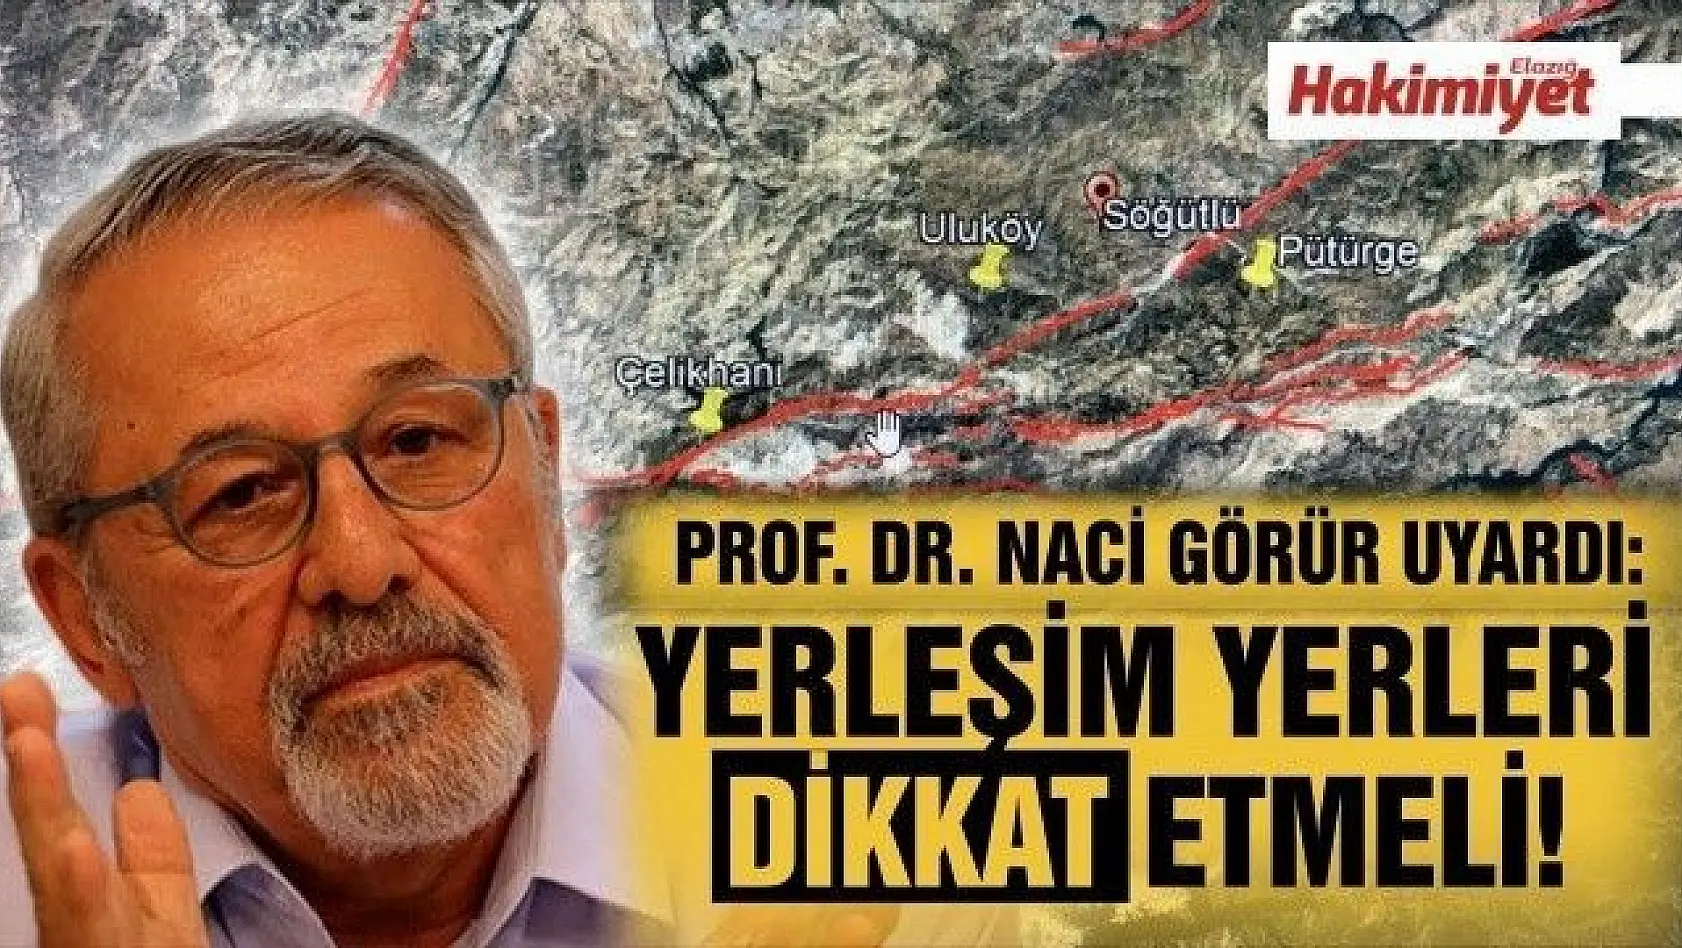 DEPREM UZMANI PROF.DR. NACİ GÖRÜR UYARDI:'YERLEŞİM YERLERİ DİKKAT ETMELİ'